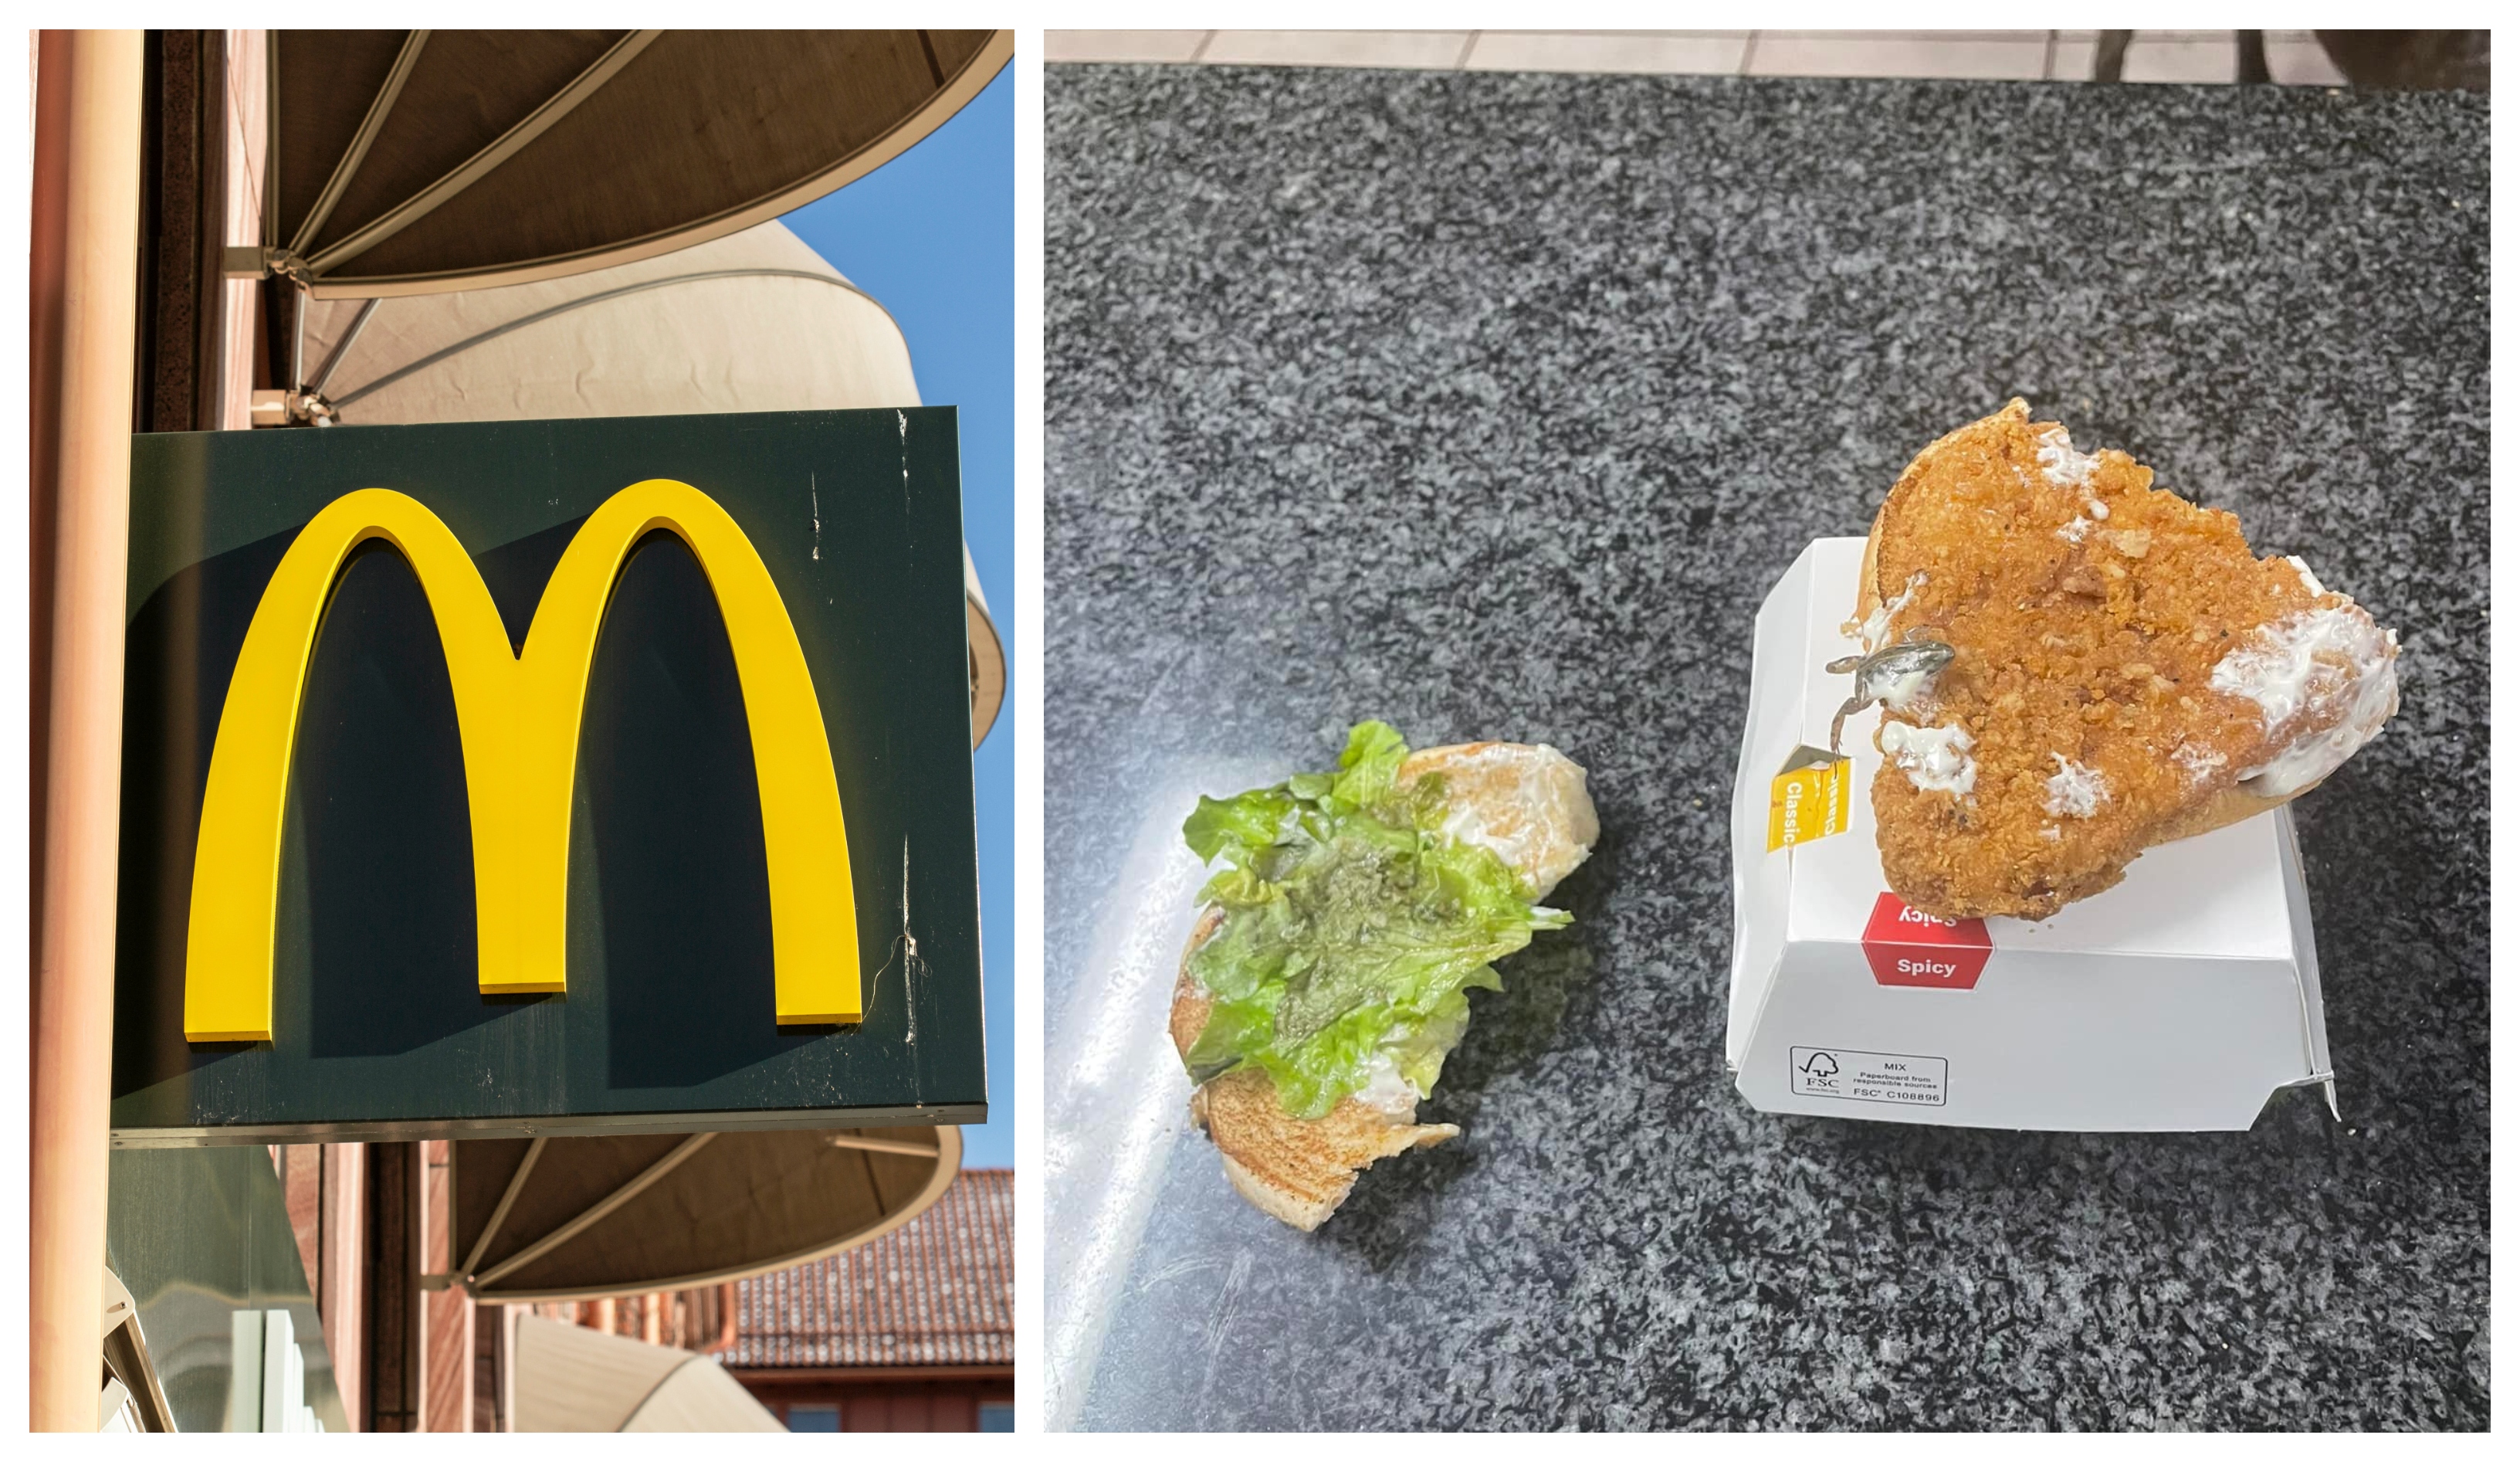 Familjen fick en överraskning när de åt sin måltid från McDonald's.